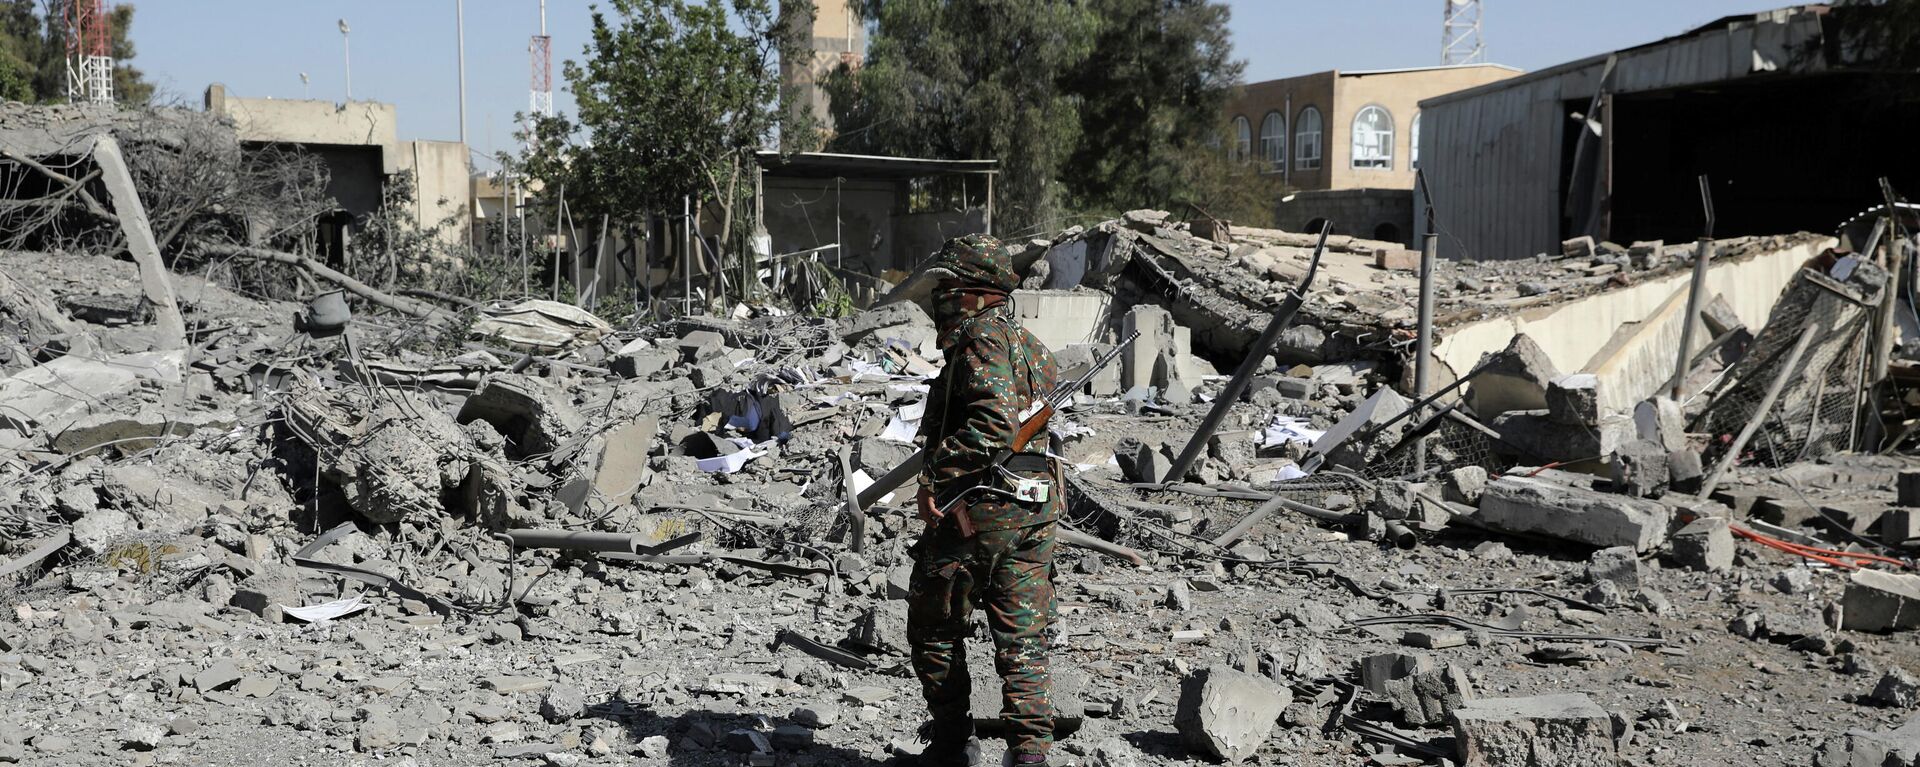 Un policía camina sobre los escombros de un edificio destruido por los ataques aéreos liderados por Arabia Saudita en Yemen - Sputnik Mundo, 1920, 08.01.2022